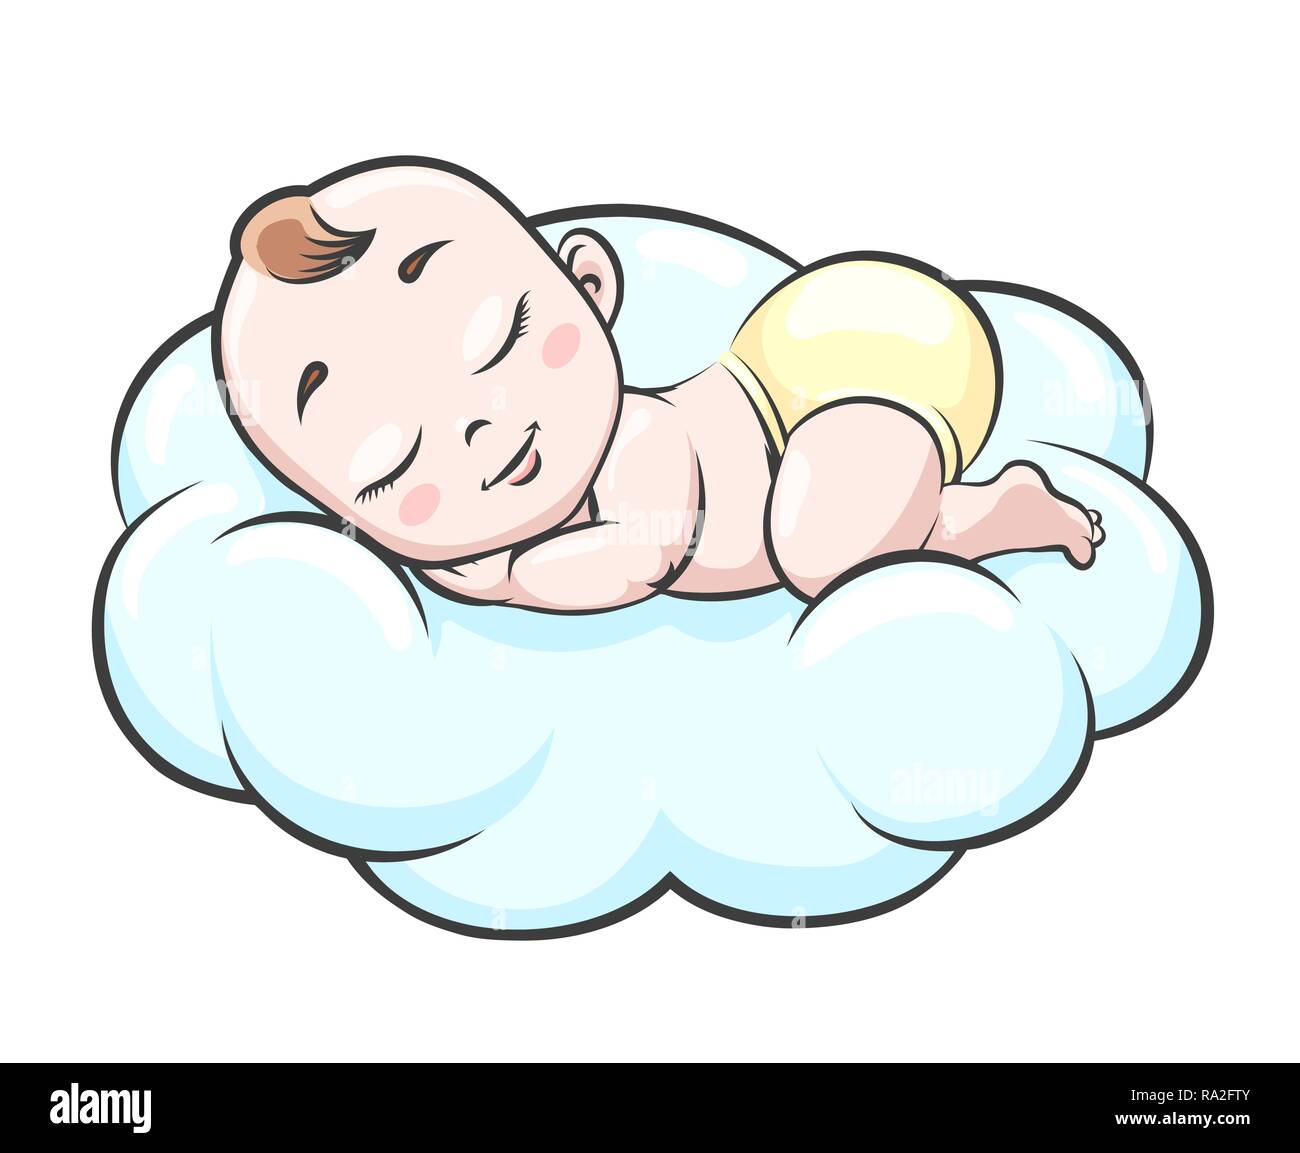 Bambino su cloud. Neonato bambino felice dormire in nuvole illustrazione  vettoriale, smilingcute piccolo bimbo con angel face in pannolini Immagine  e Vettoriale - Alamy